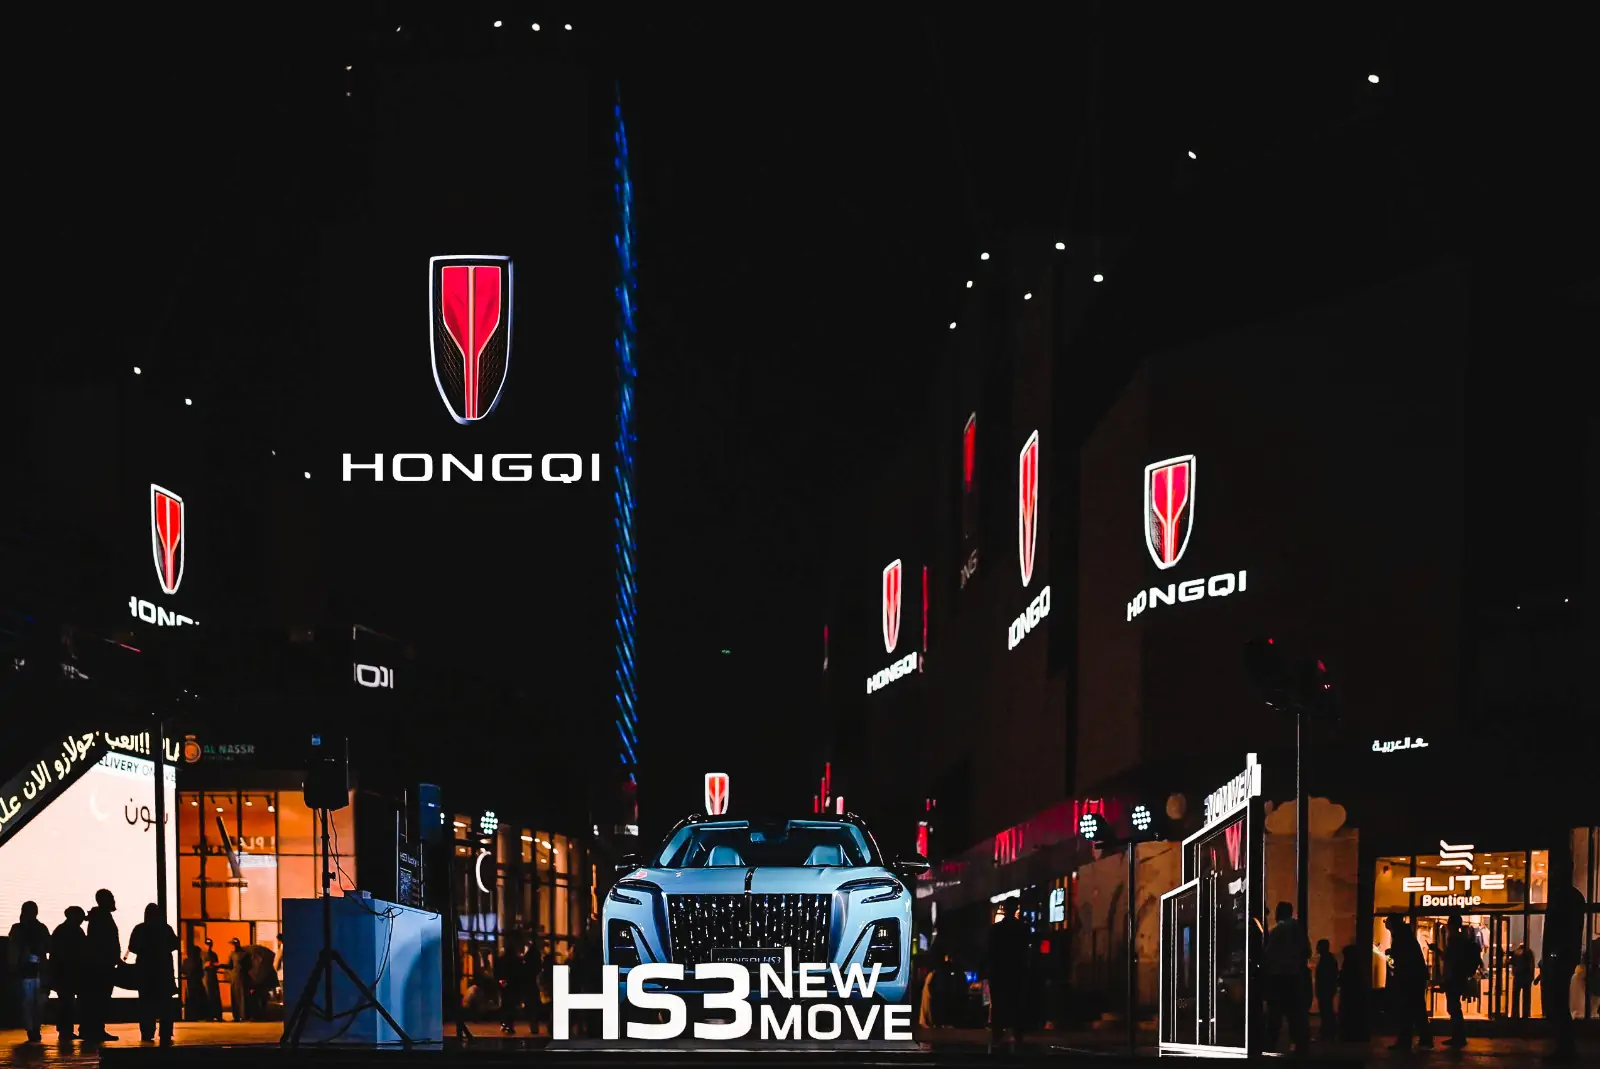 هونشي HS3 تنطلق رسمياً في الشرق الأوسط بسعر 109.900 ريال سعودي مسبق الدفع